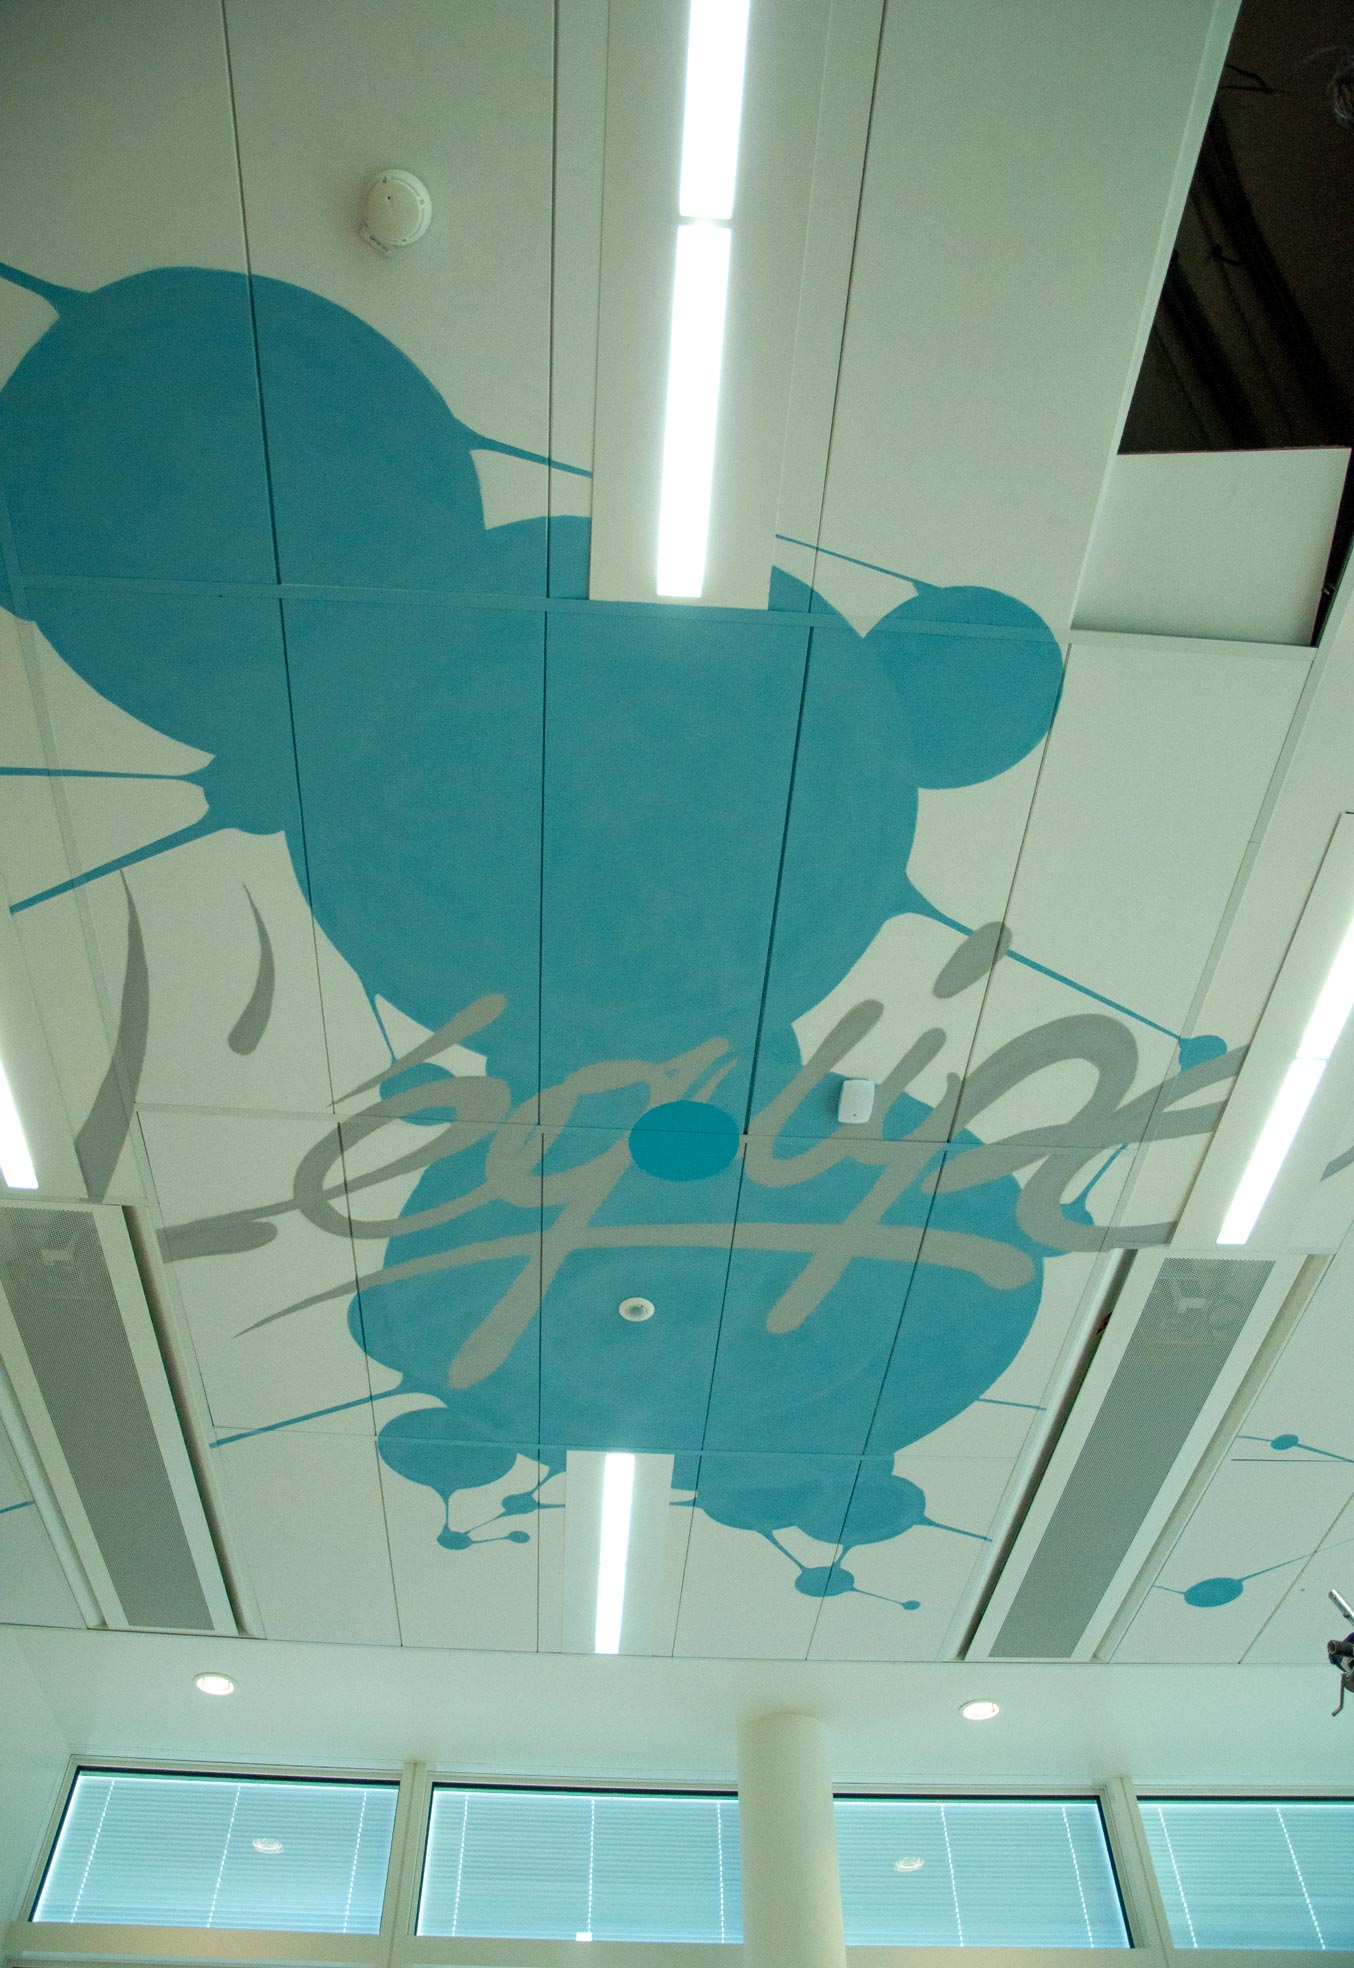 décor design aeroport de paris decoration fresque espace detente peinture graff realisme main robot futur avion transport plafond